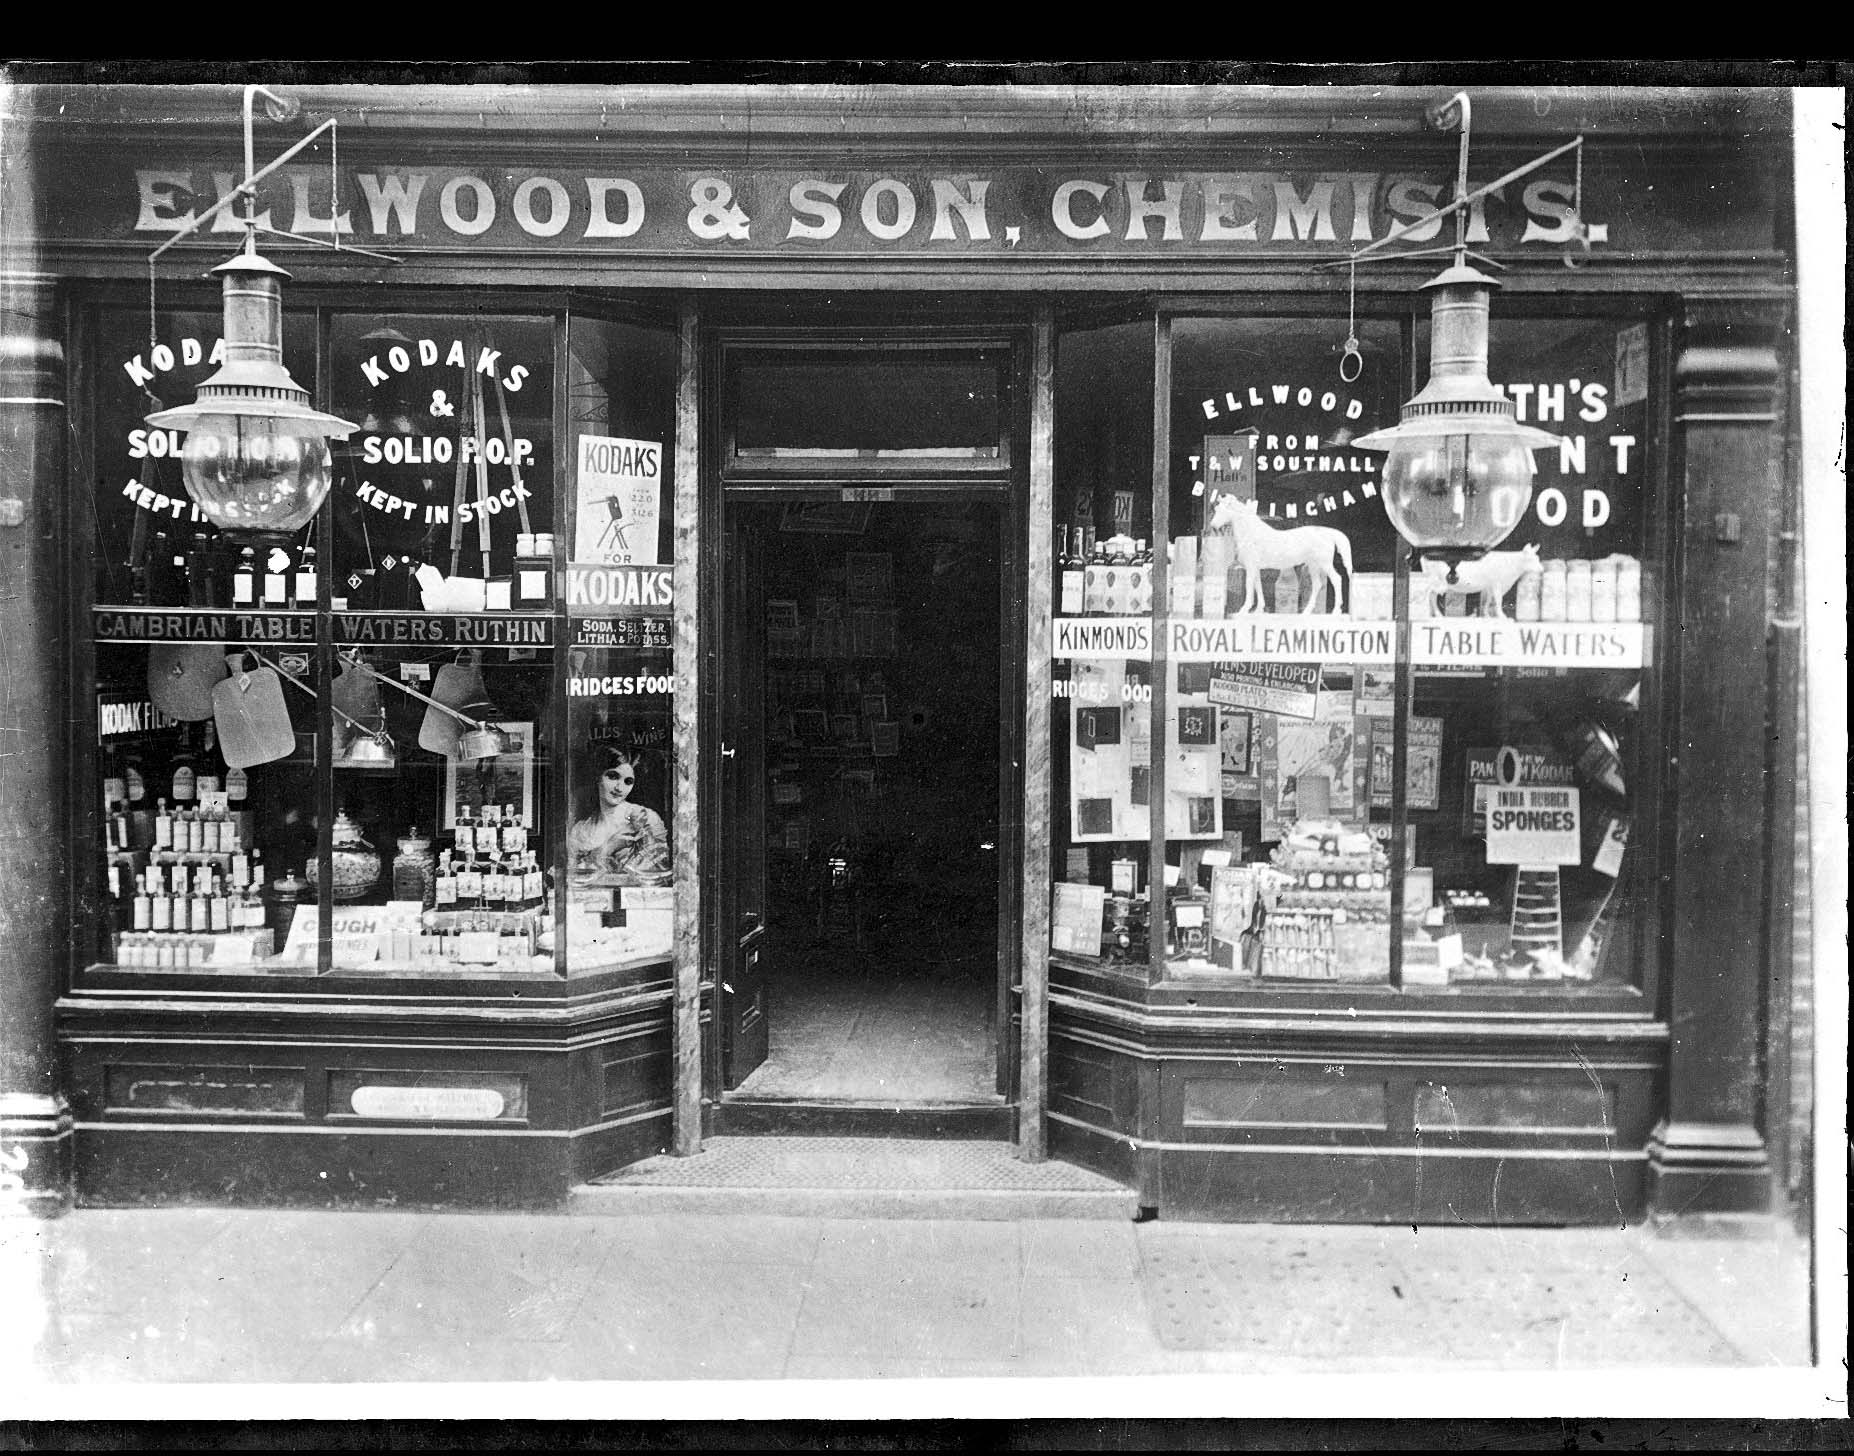 Ellwood & Son Chemist shop front